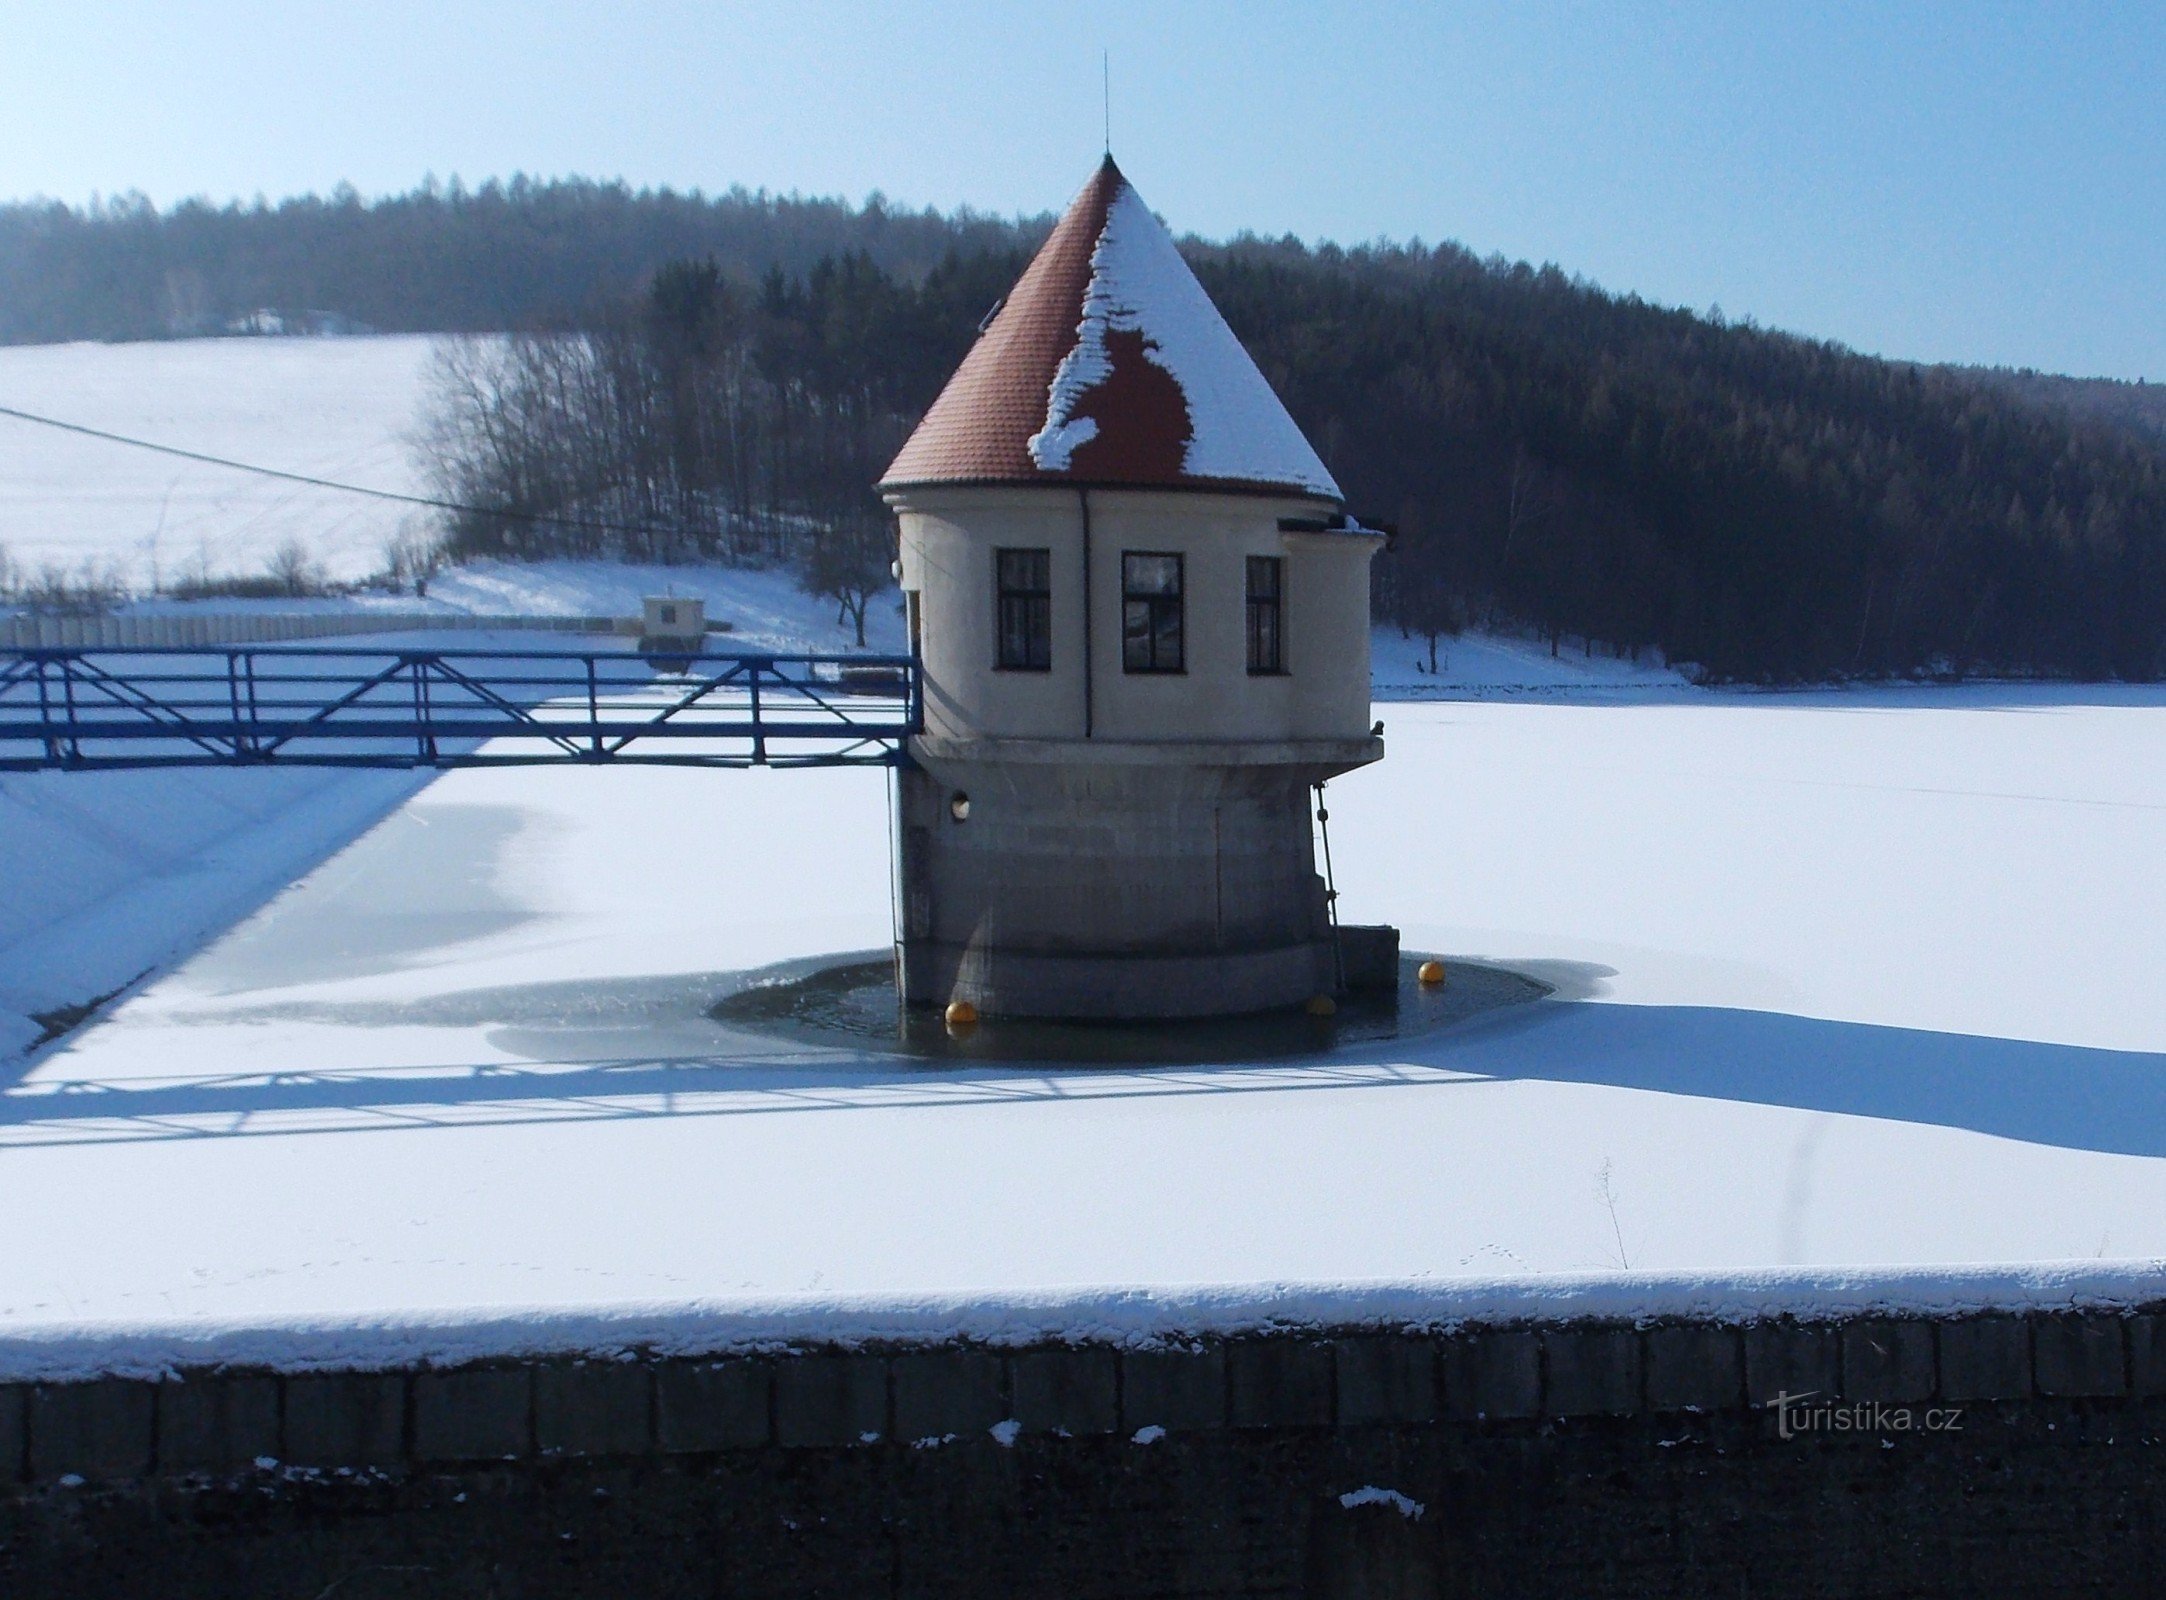 Fryšták water reservoir near Zlín